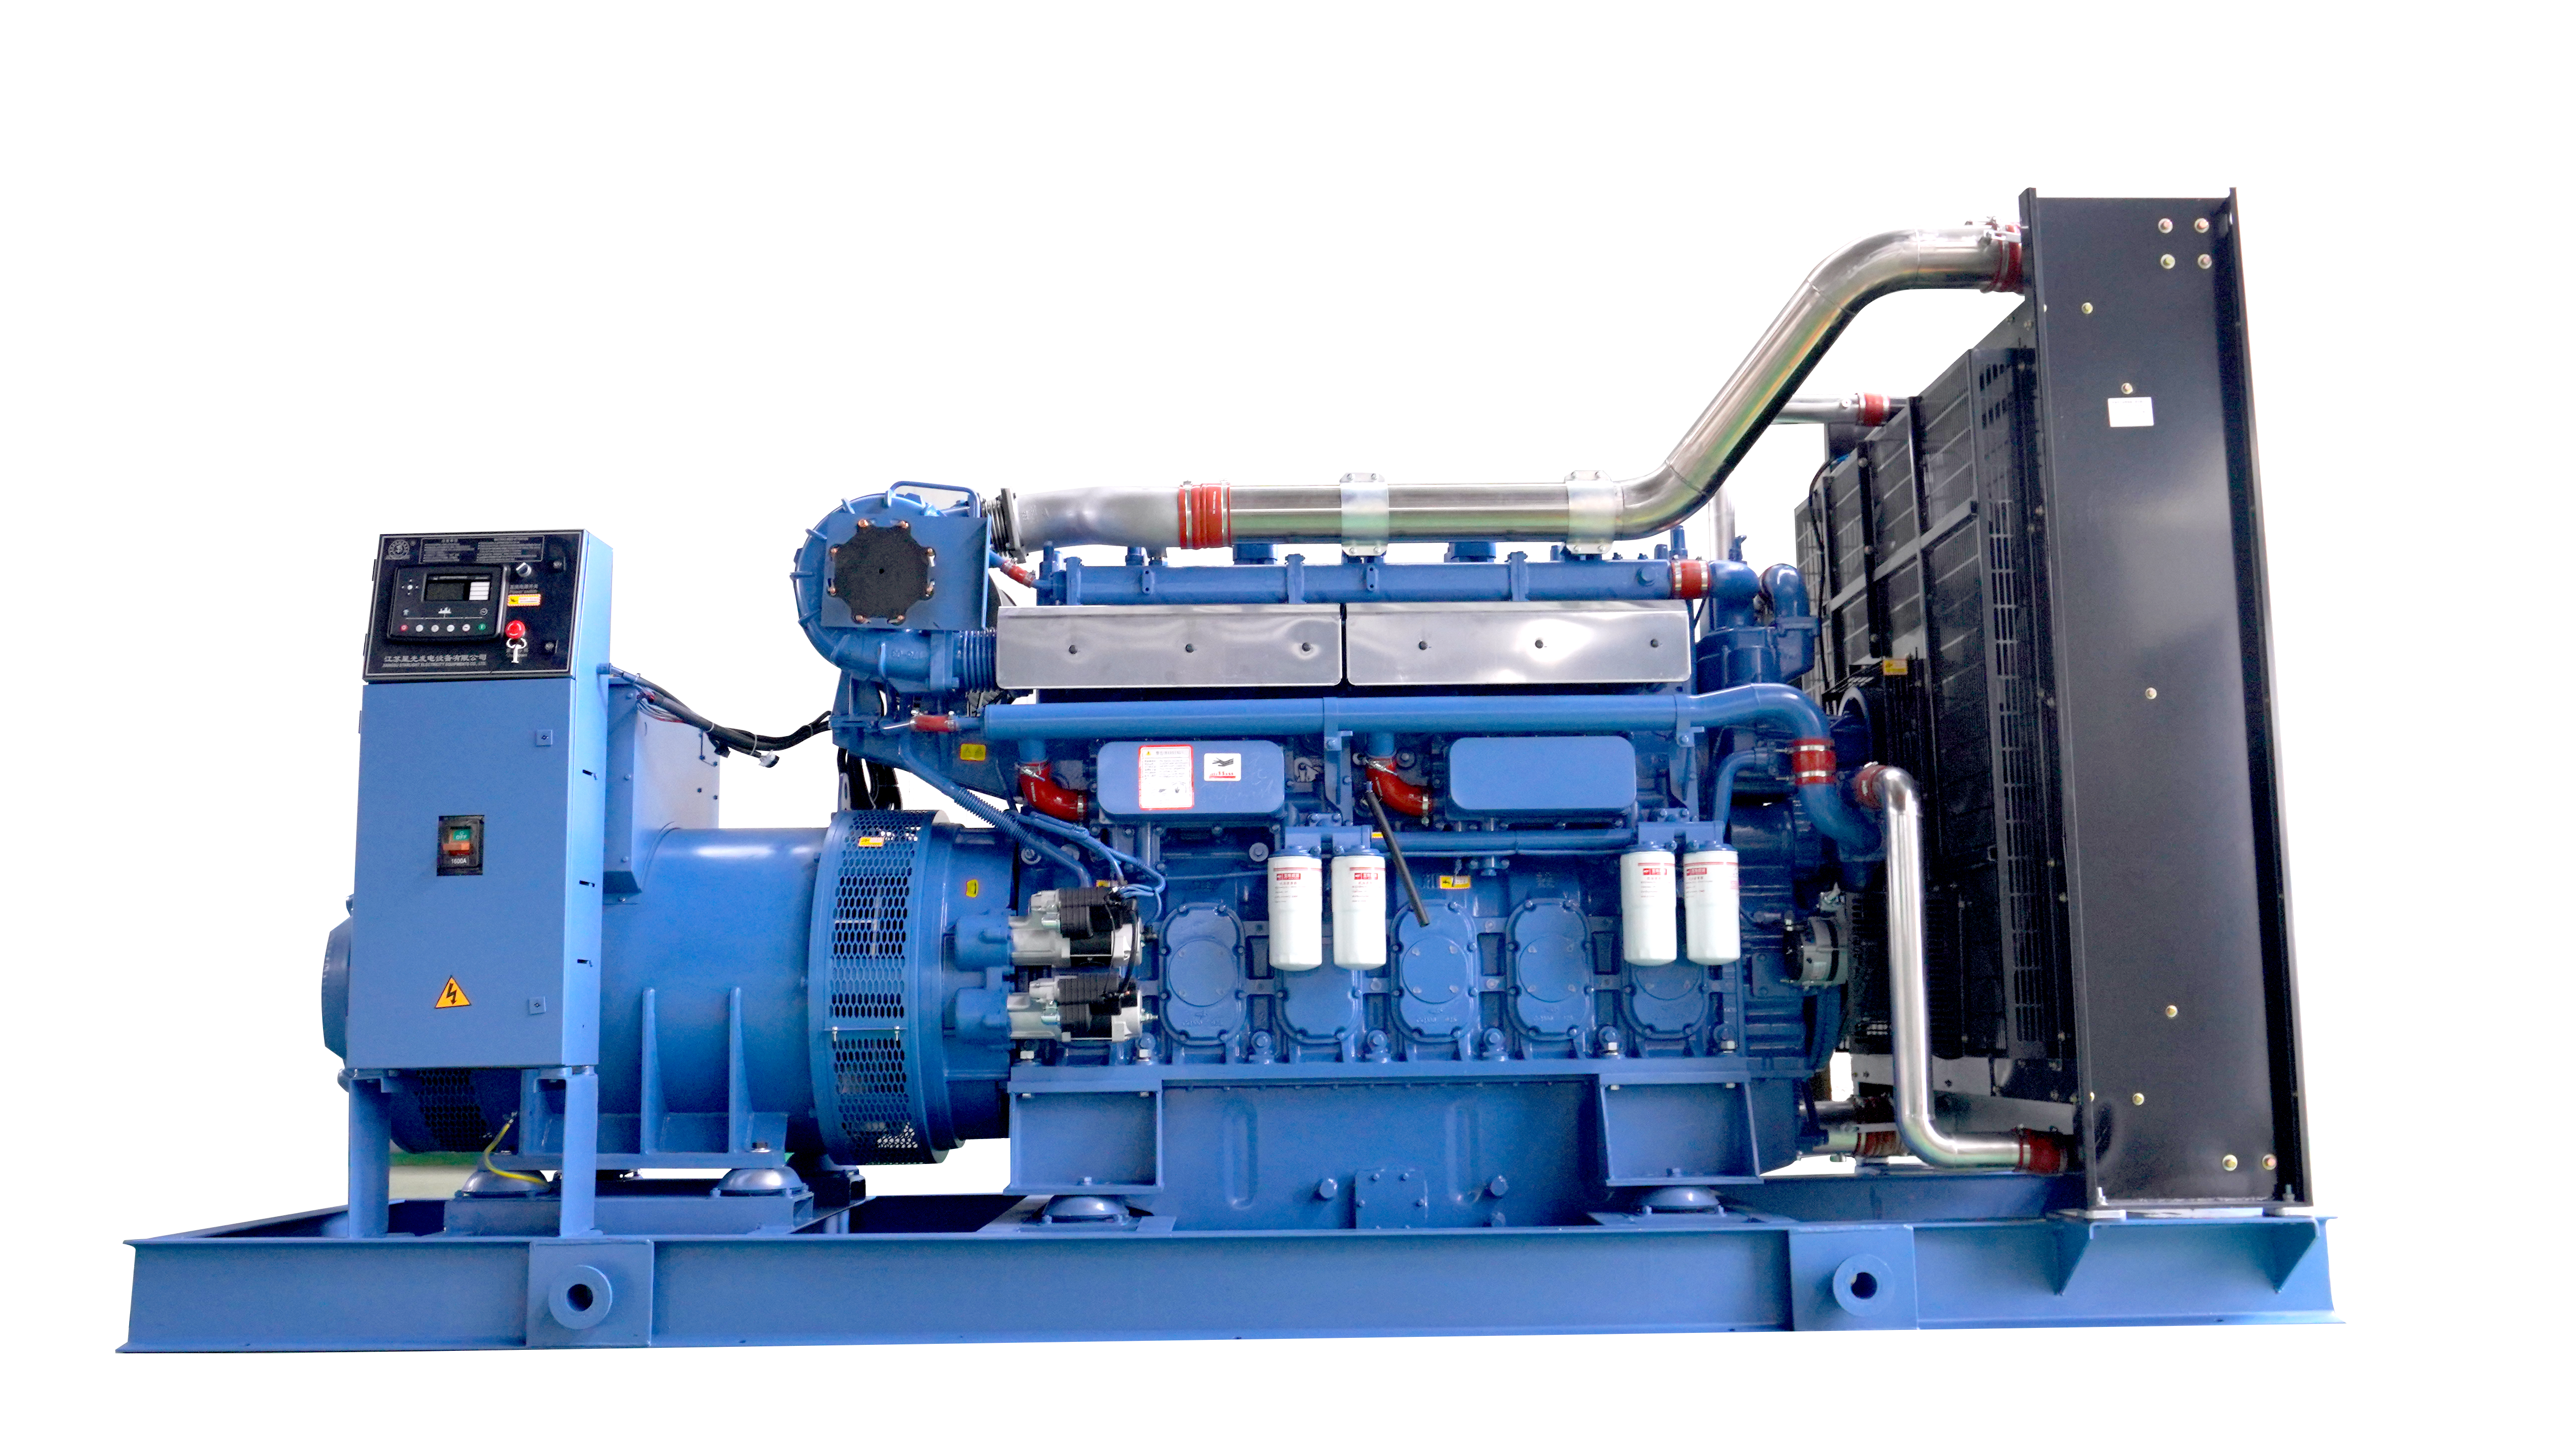 新疆东方希望碳素有限公司采购两台玉柴200KW柴油发电机组